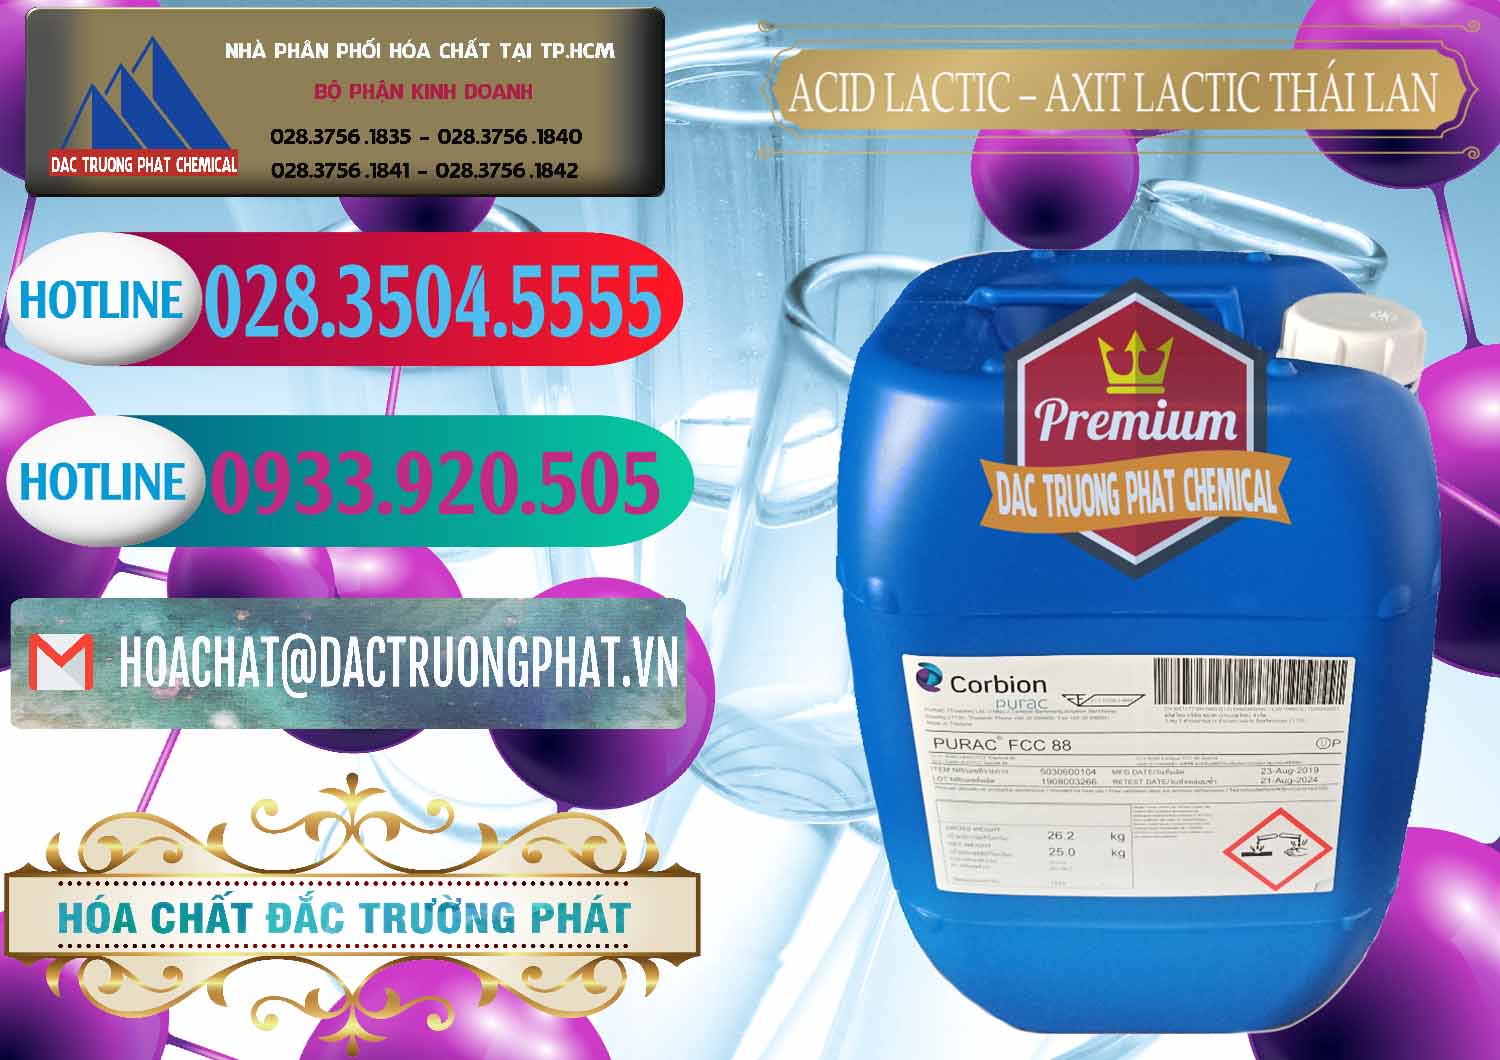 Cty bán ( phân phối ) Acid Lactic – Axit Lactic Thái Lan Purac FCC 88 - 0012 - Đơn vị chuyên kinh doanh và cung cấp hóa chất tại TP.HCM - truongphat.vn